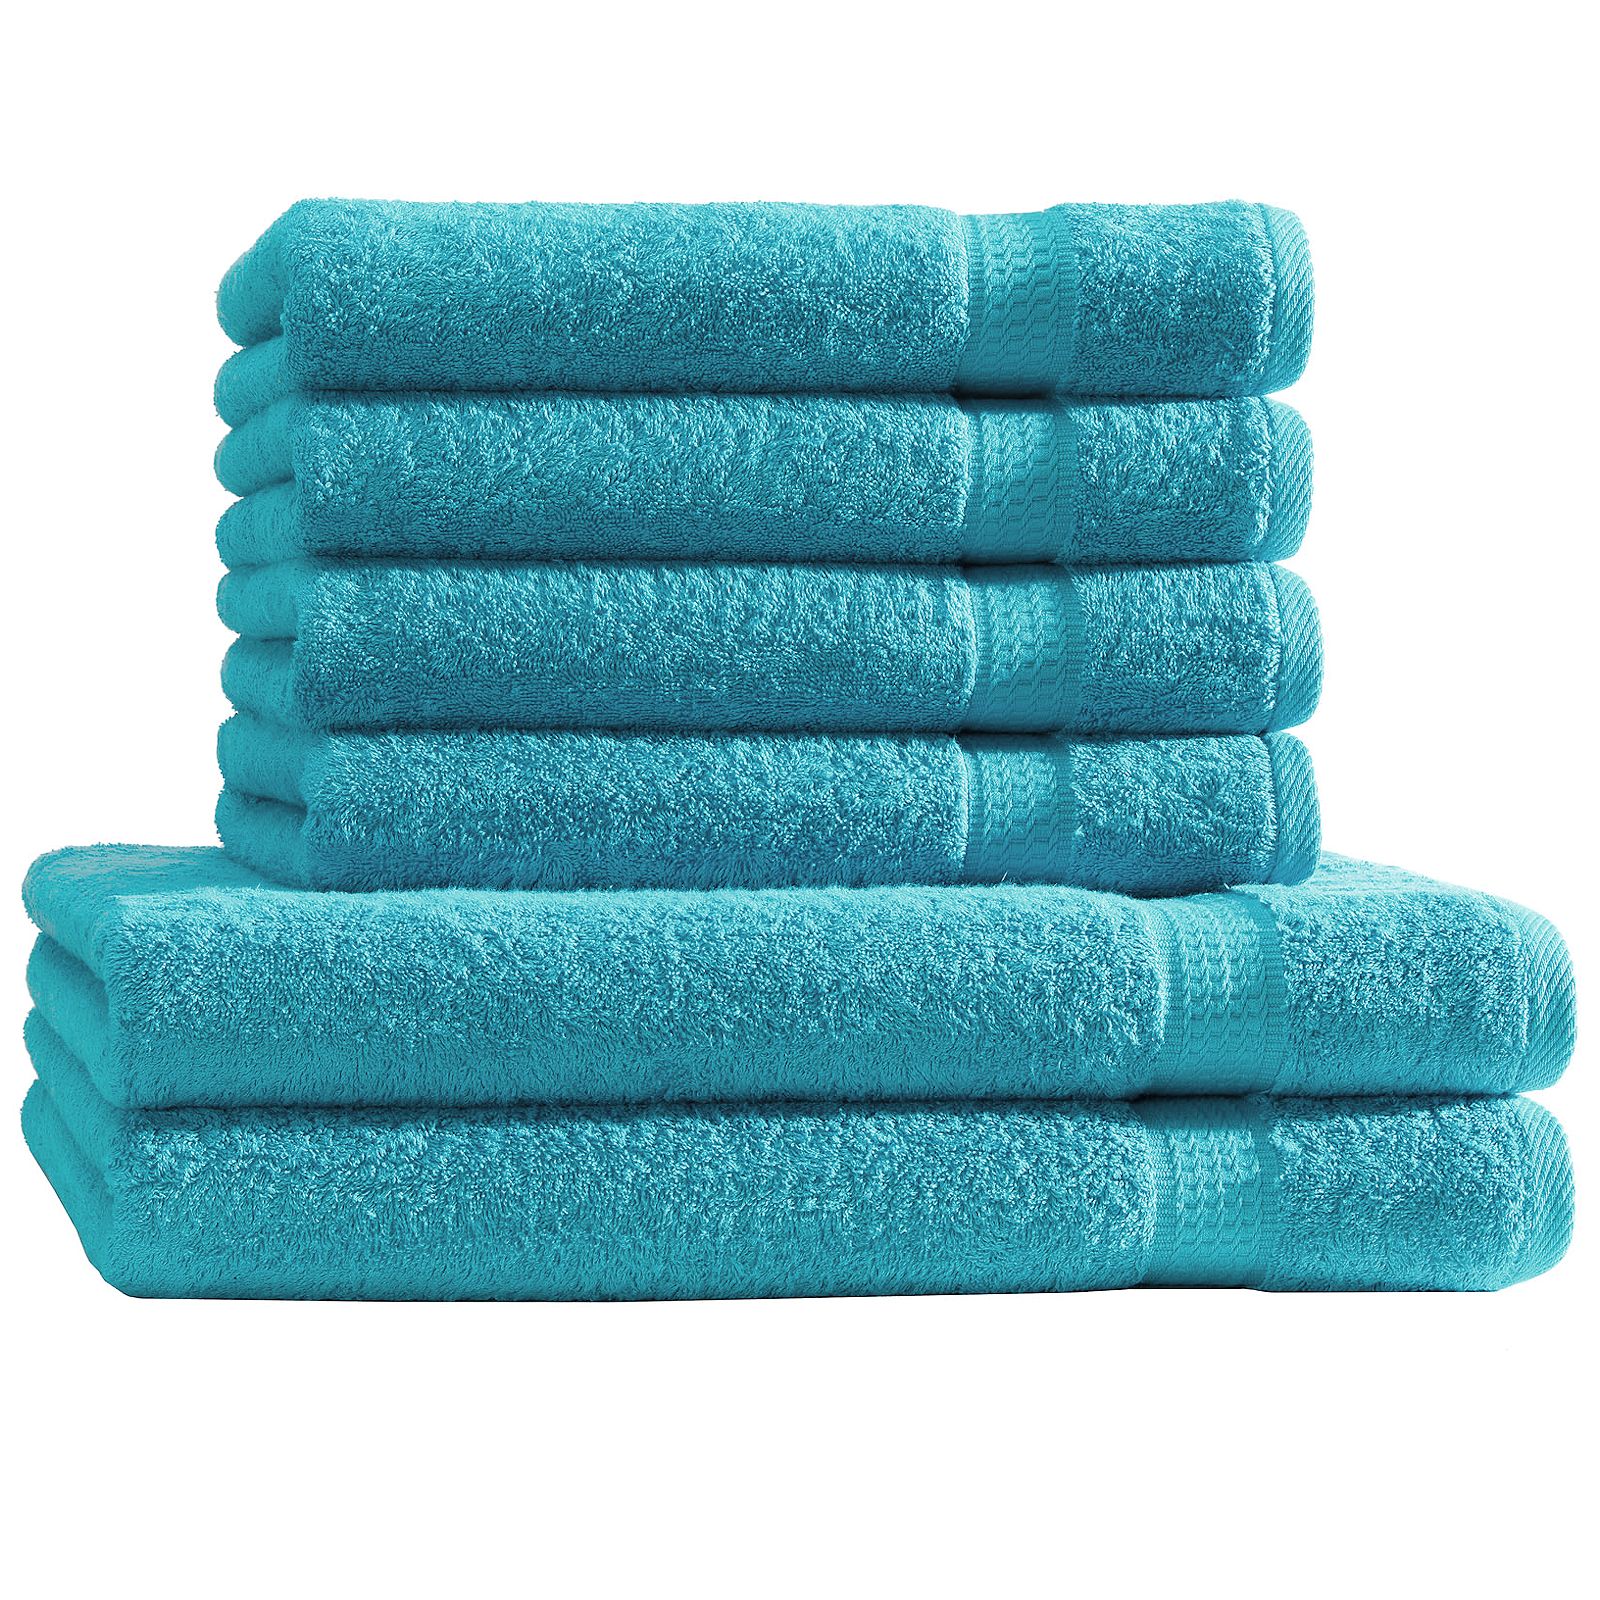 Handtuch Set 6tlg. 4 Handtücher 2 Duschtücher Duschtuch Frottee Baumwolle  6er | eBay | Handtuch-Sets